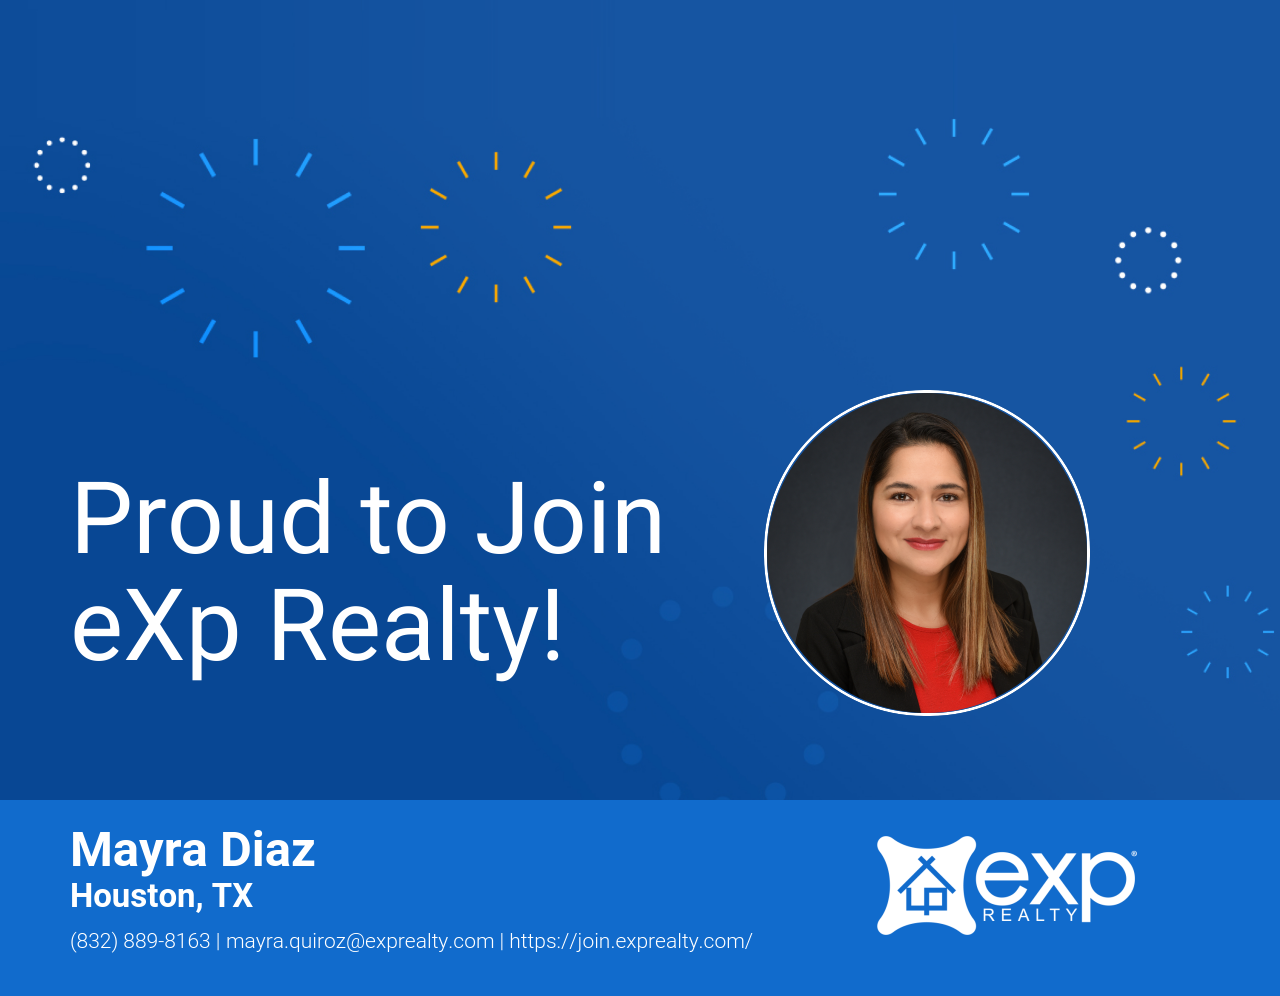 Mayra Diaz Joined eXp Realty!